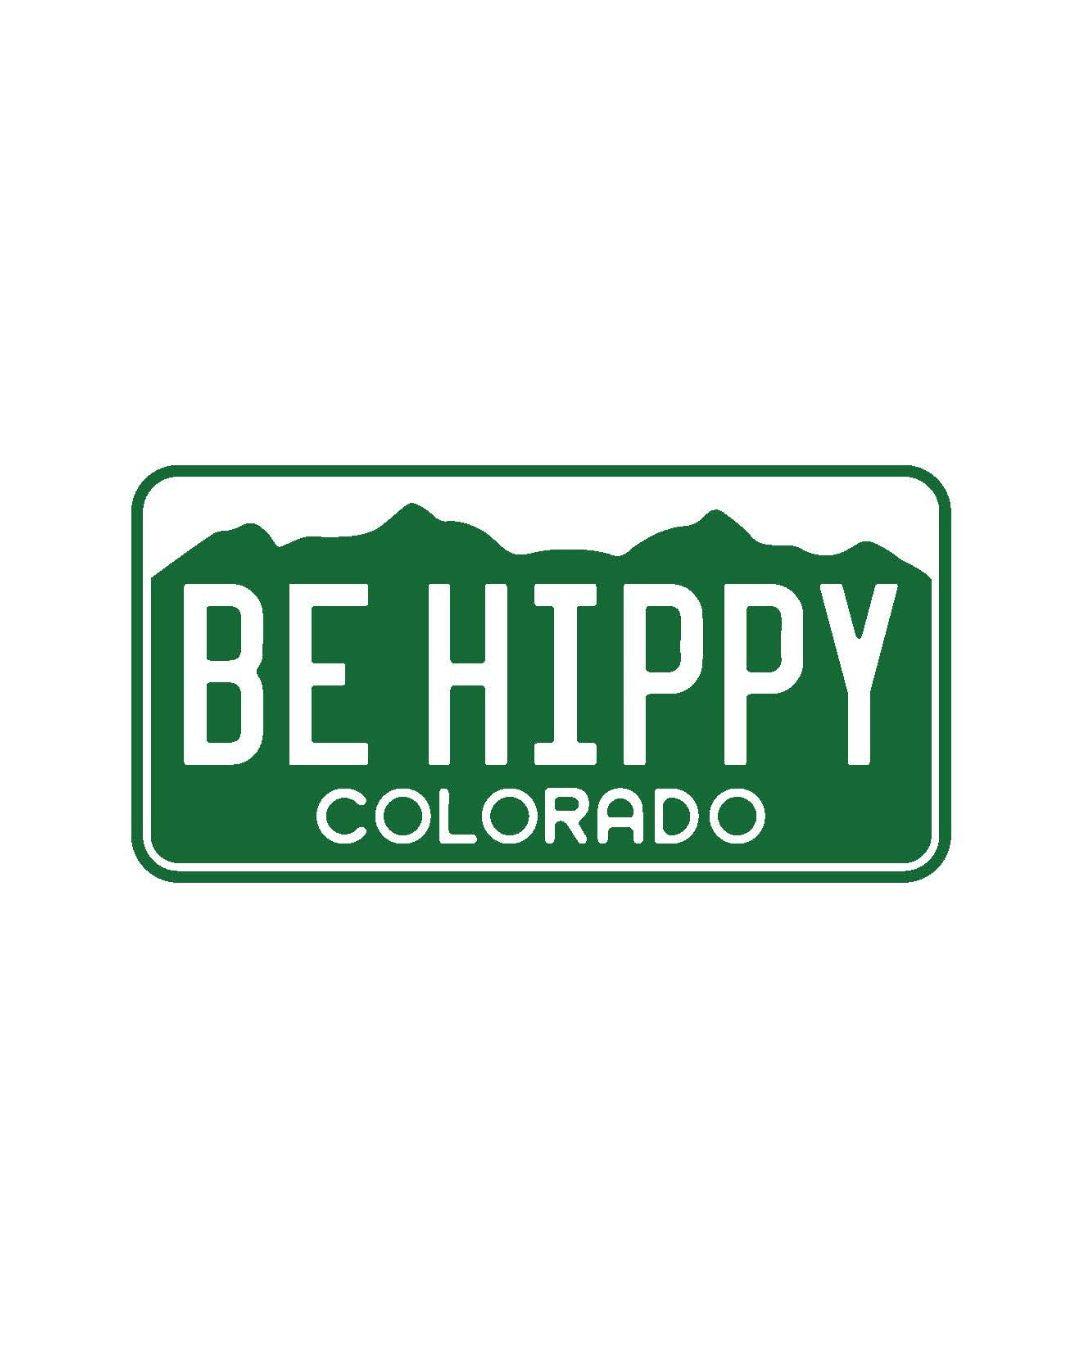 Be Hippy Colorado License Plate Sticker